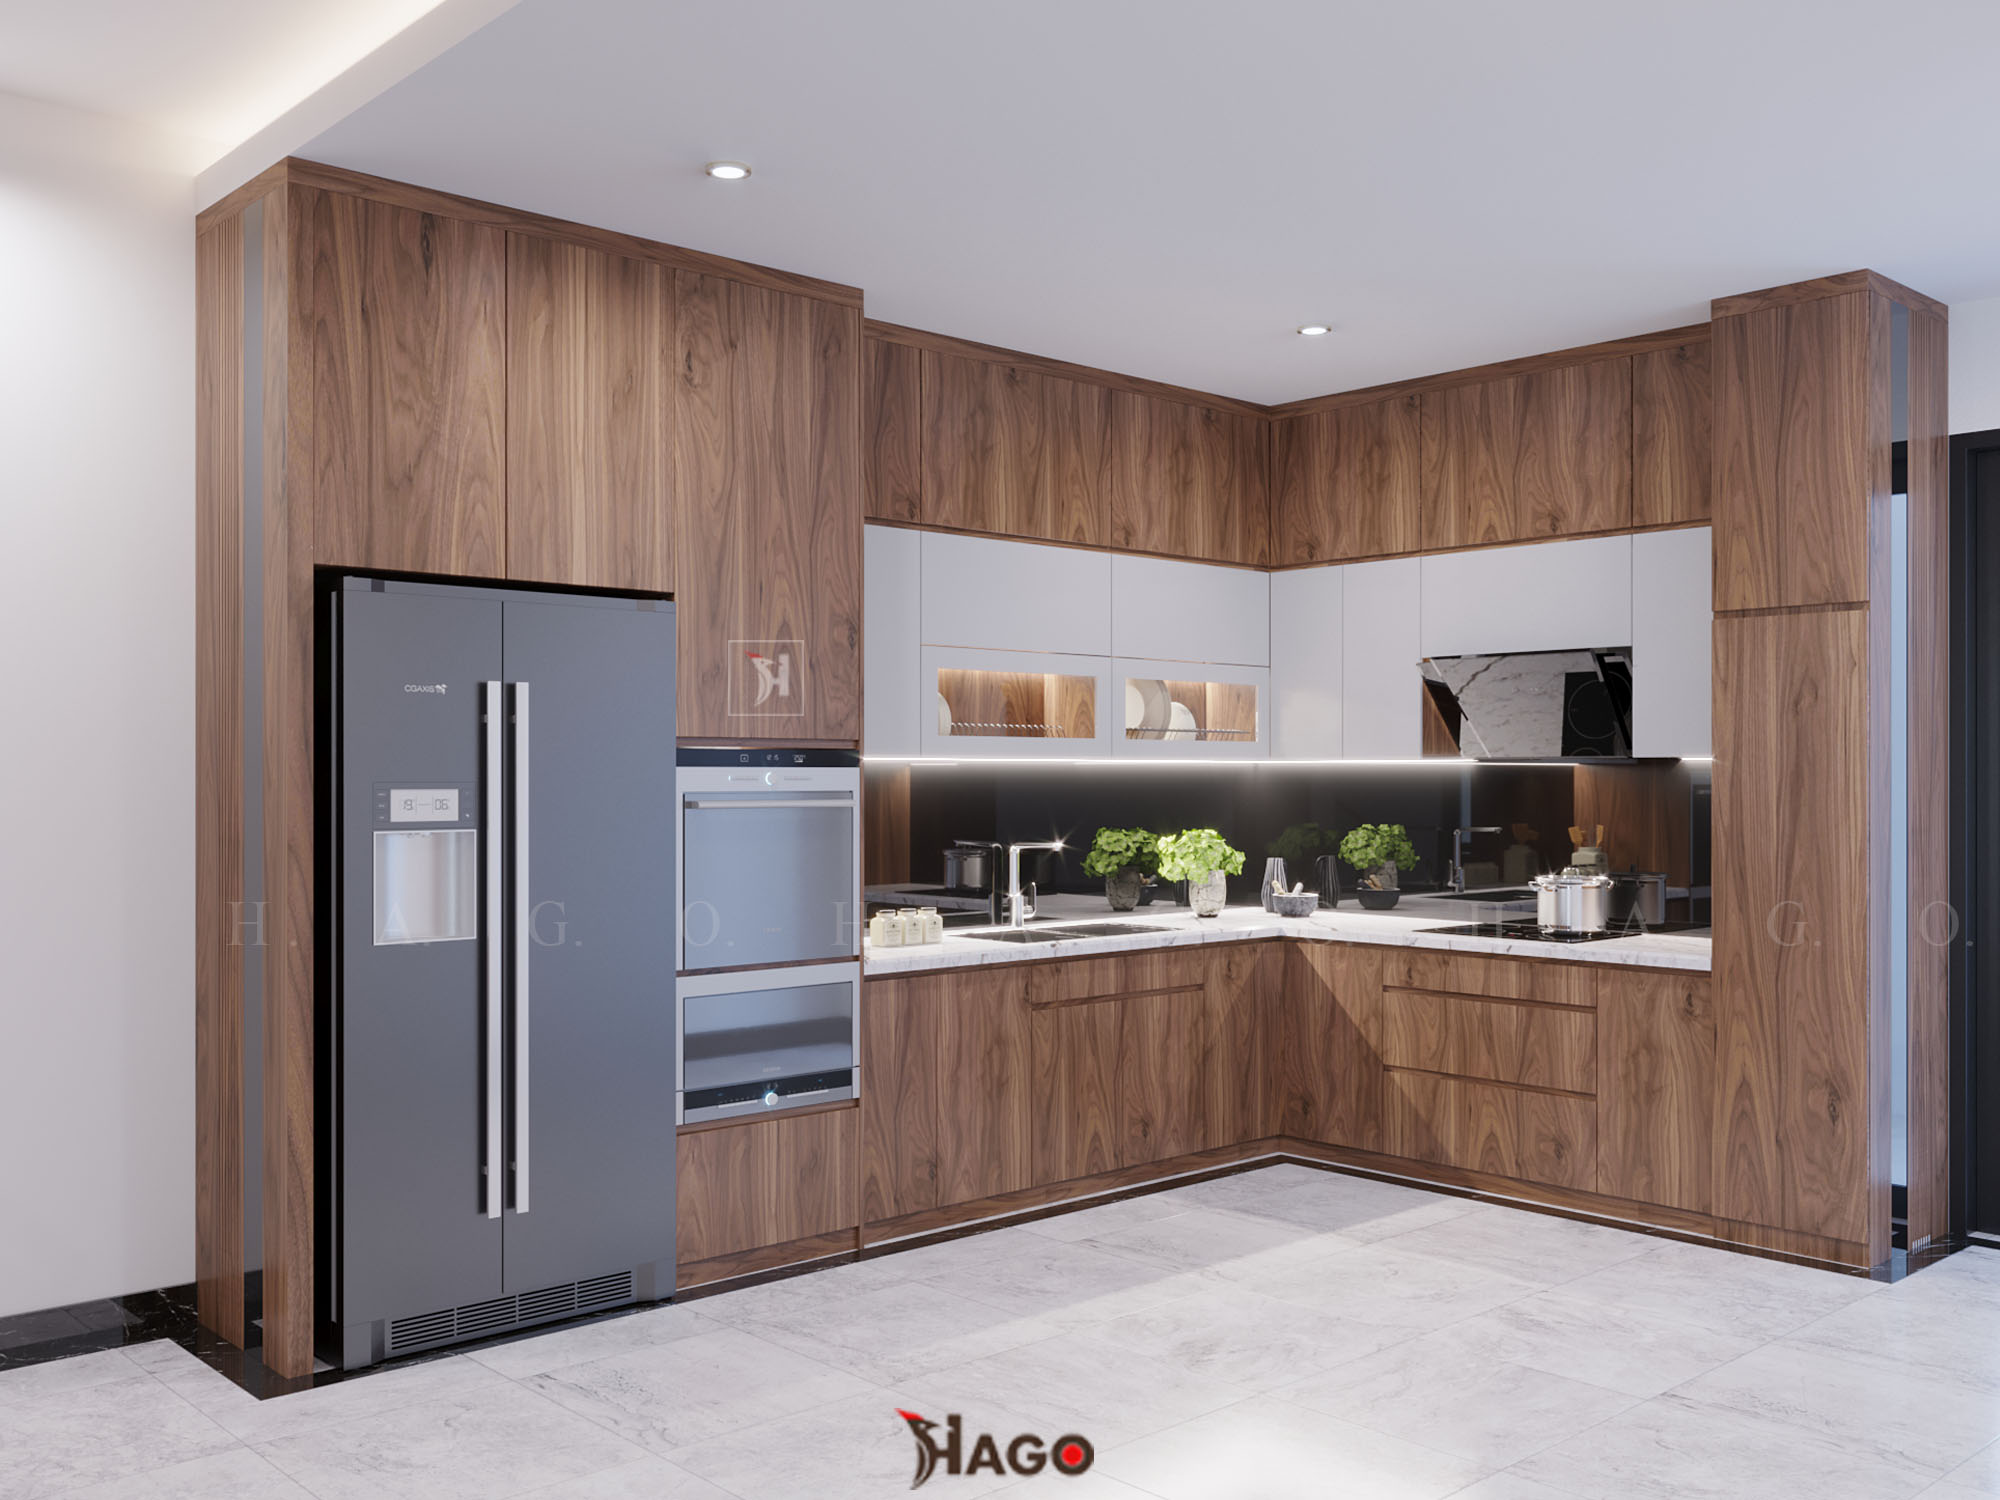 Tủ bếp gỗ đổi hiện đại của chúng tôi sẽ khiến cho không gian bếp gia đình của bạn trở nên thật tuyệt vời và sang trọng. Với thiết kế hiện đại, tủ bếp gỗ của chúng tôi sẽ giúp cho phong cách của căn bếp của bạn được nâng cao đáng kể. Chúng tôi đảm bảo rằng khách hàng sẽ không hối hận khi đến với sản phẩm của chúng tôi. Hãy cùng đến với chúng tôi để đổi mới không gian bếp của bạn.